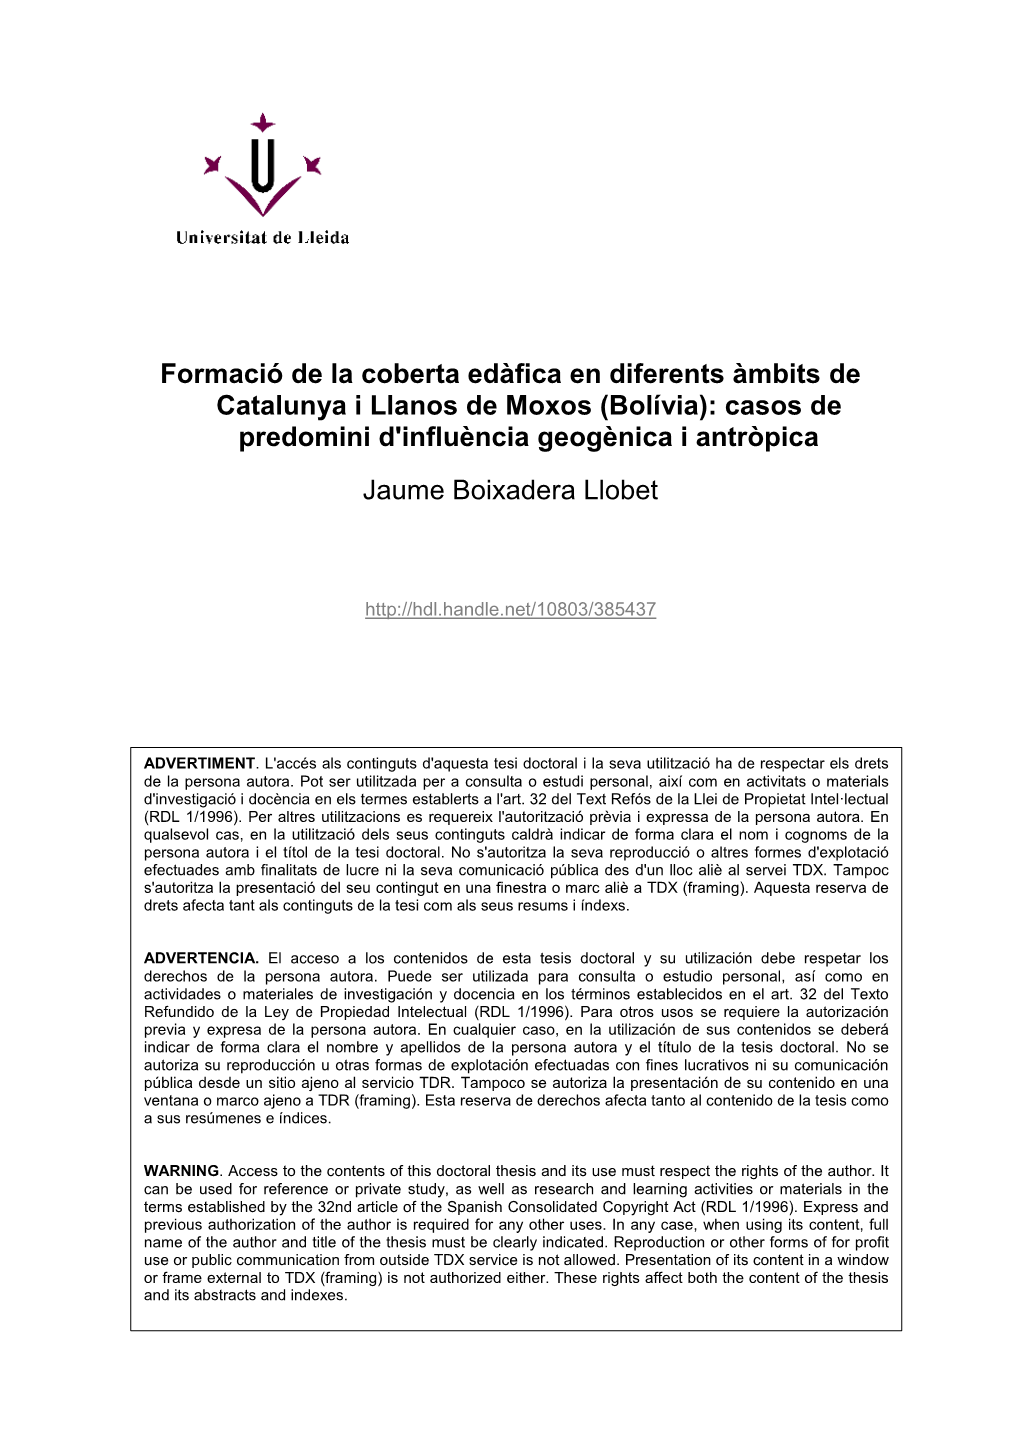 Formació De La Coberta Edàfica En Diferents Àmbits De Catalunya I Llanos De Moxos (Bolívia): Casos De Predomini D'influència Geogènica I Antròpica